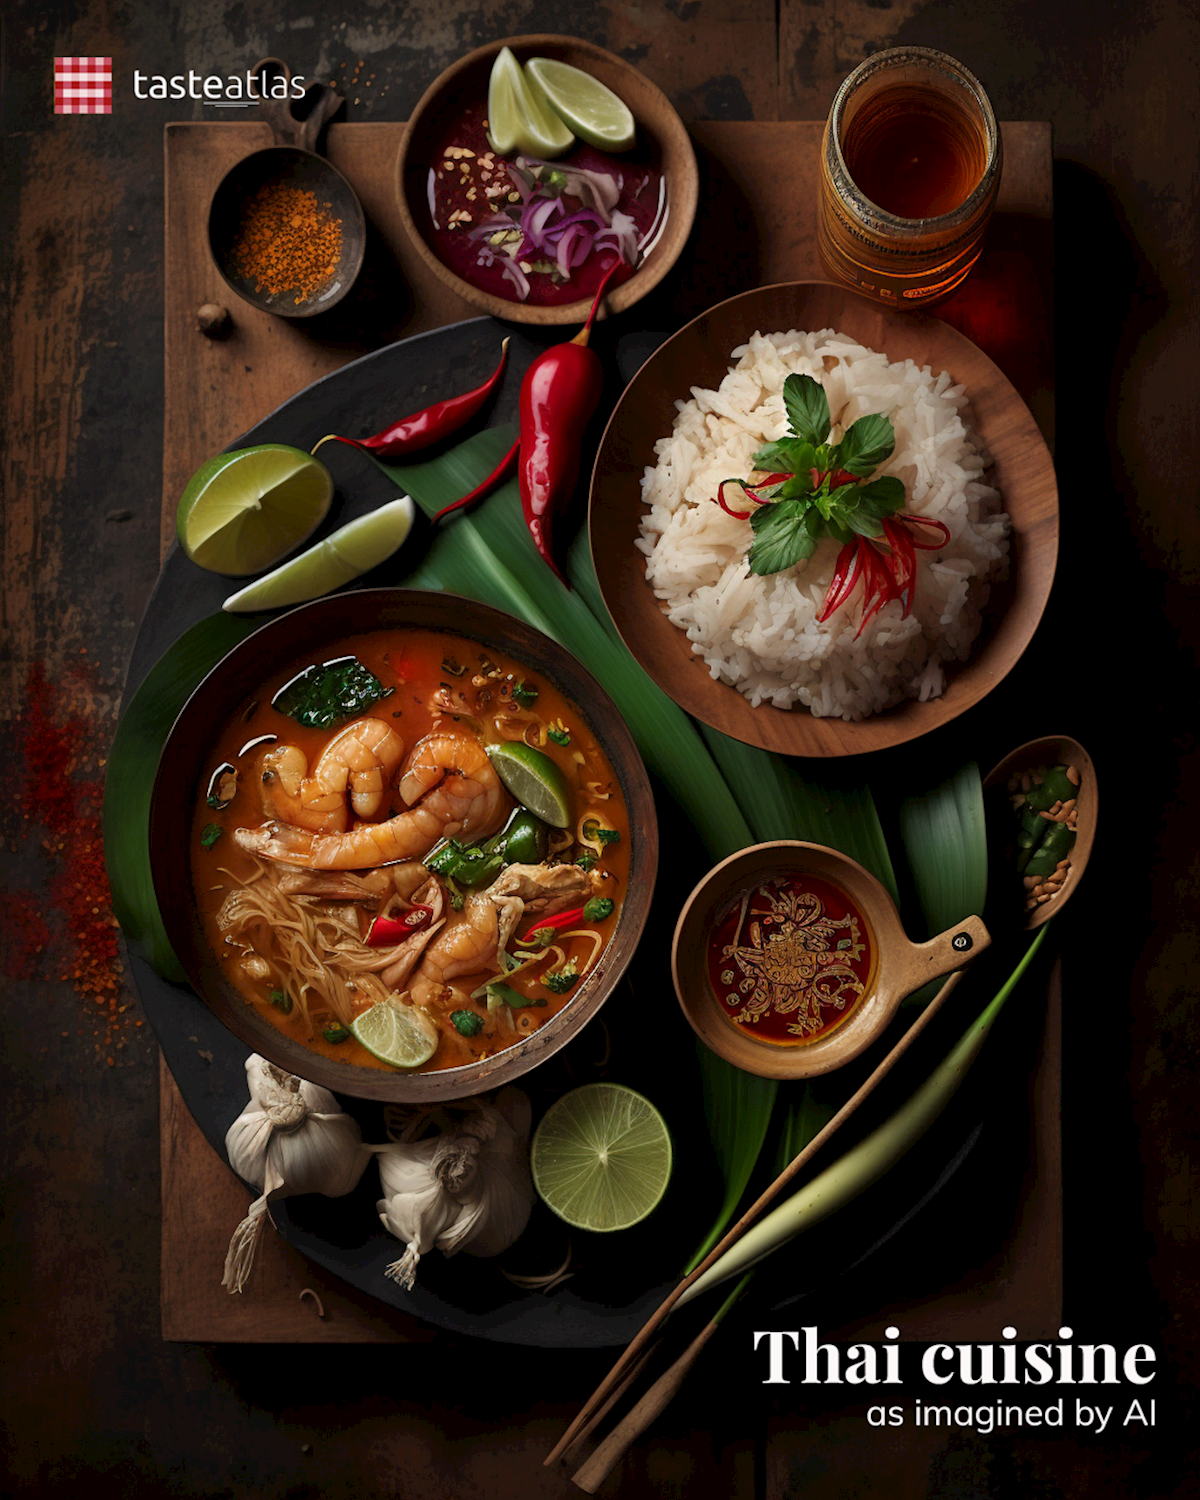 Prompt: Imagine Thai cuisine